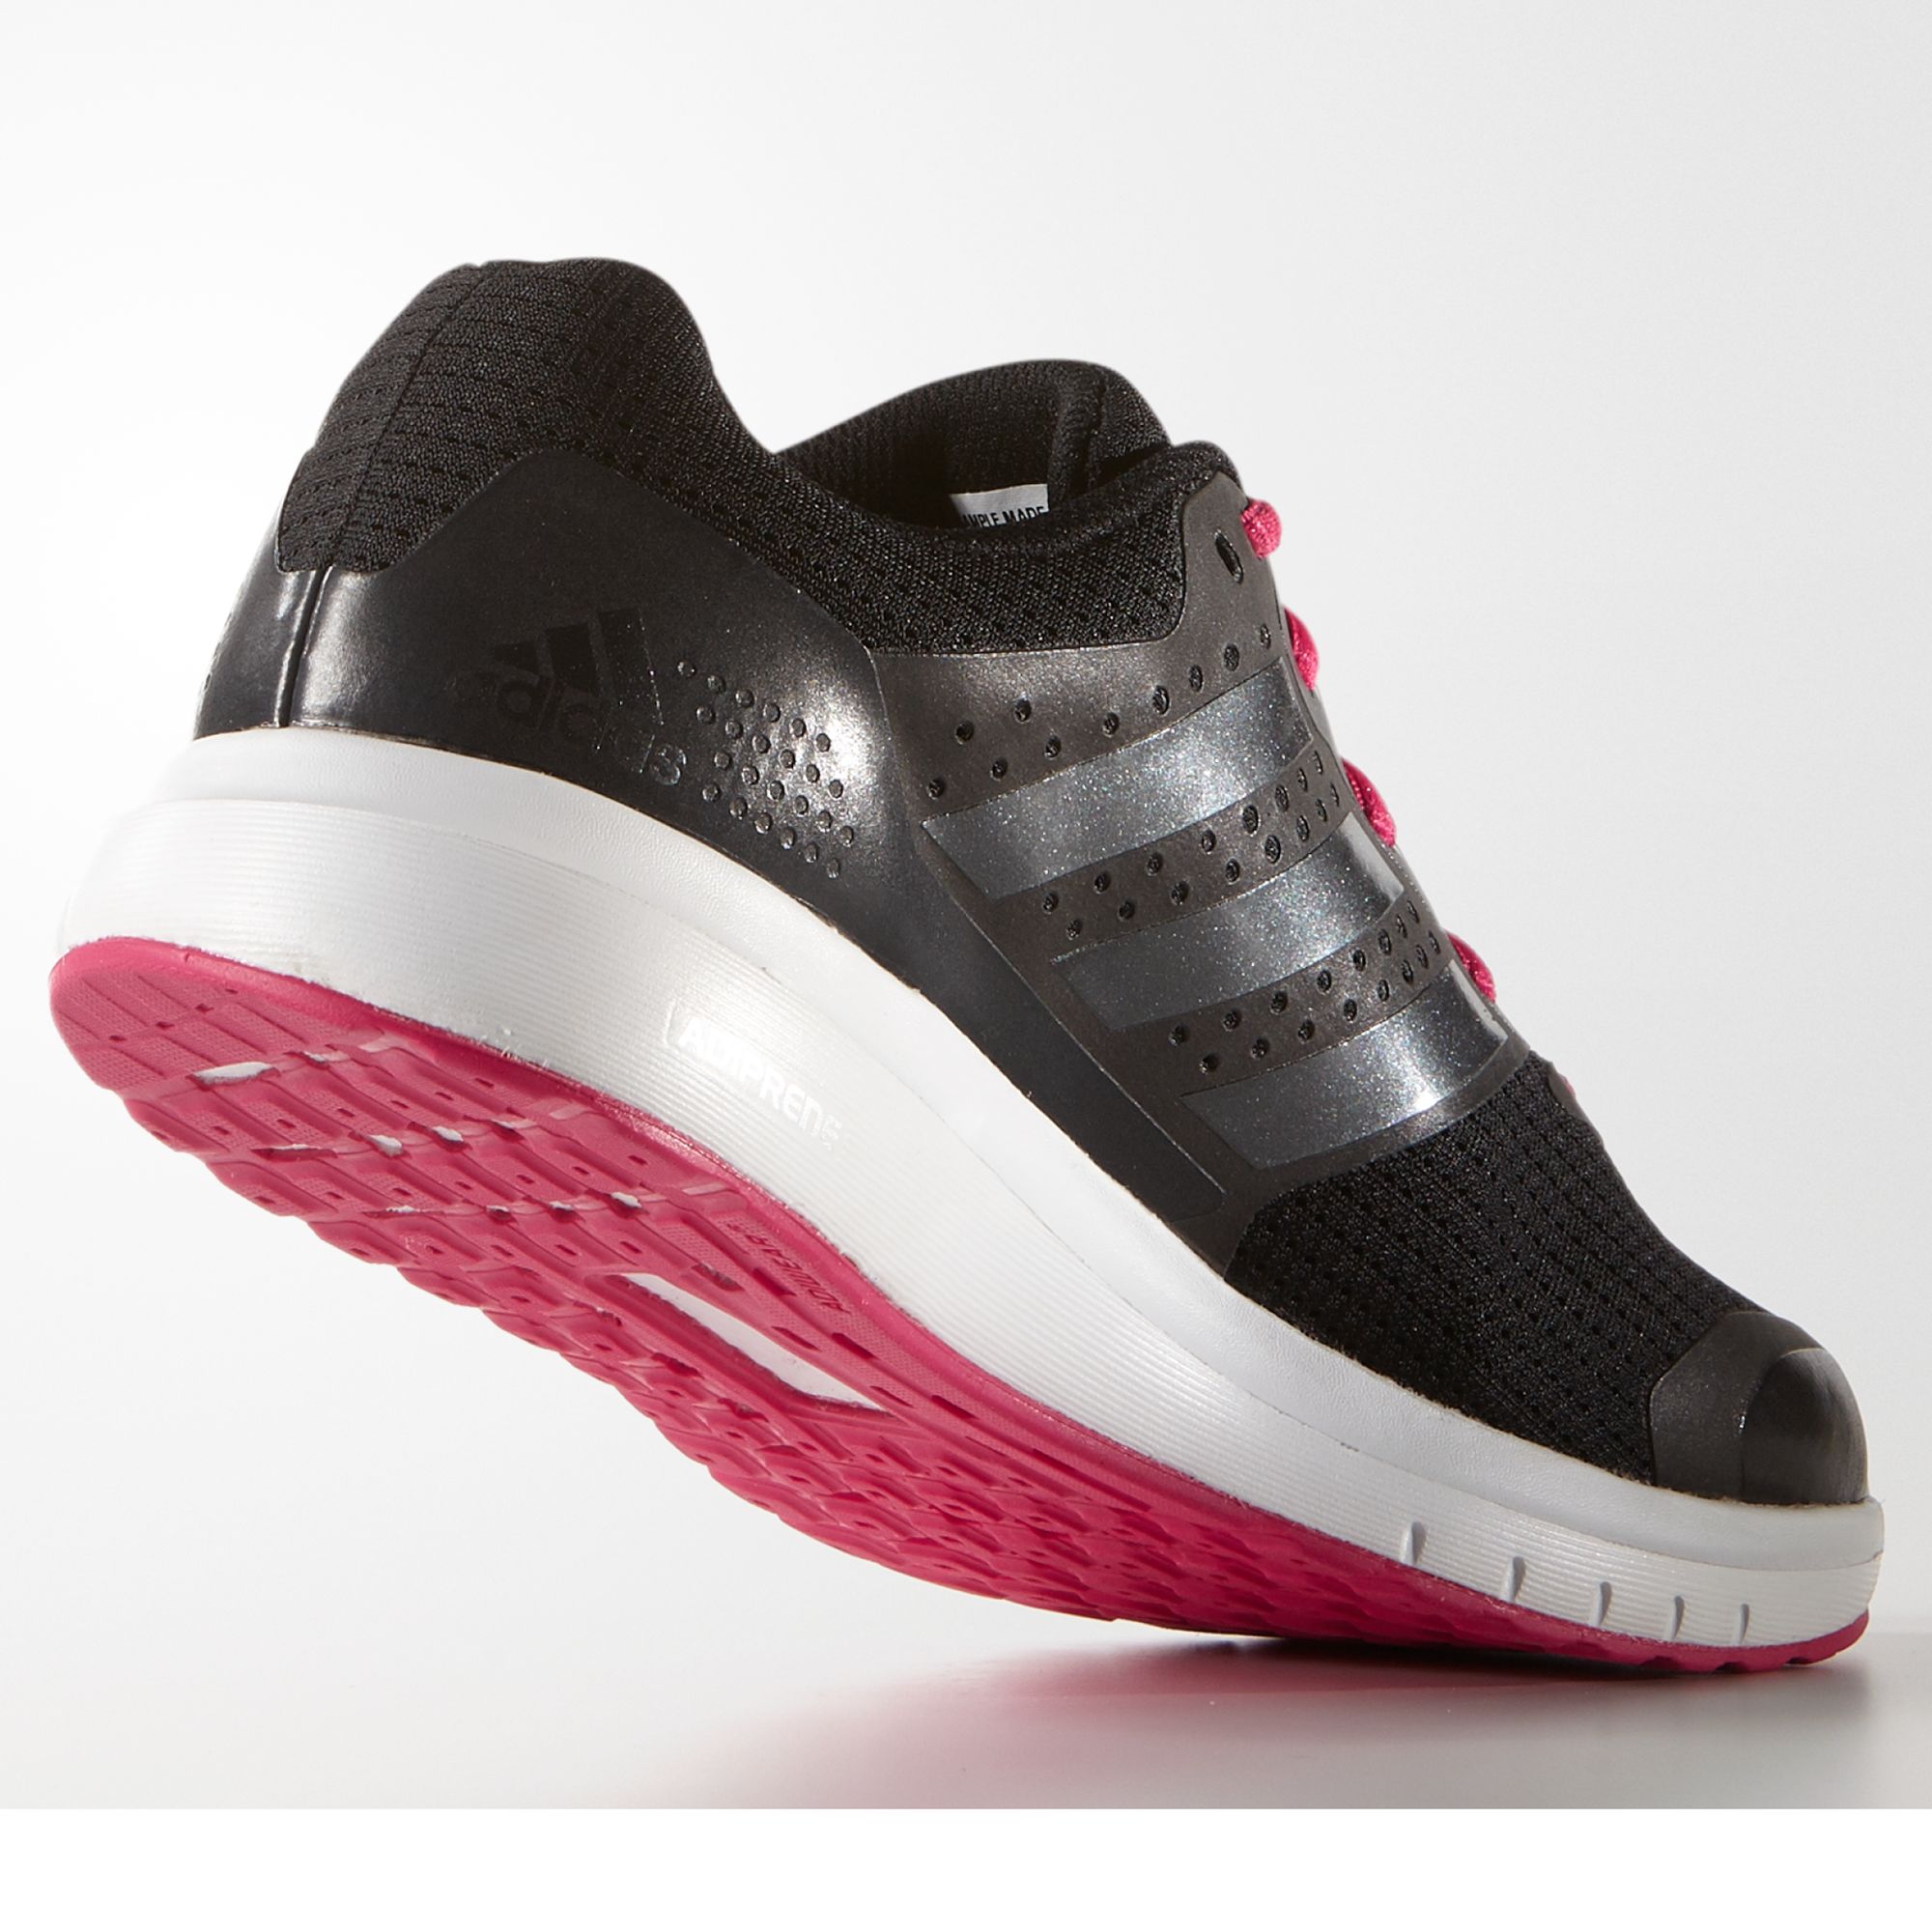 adidas duramo 7 women's running shoes